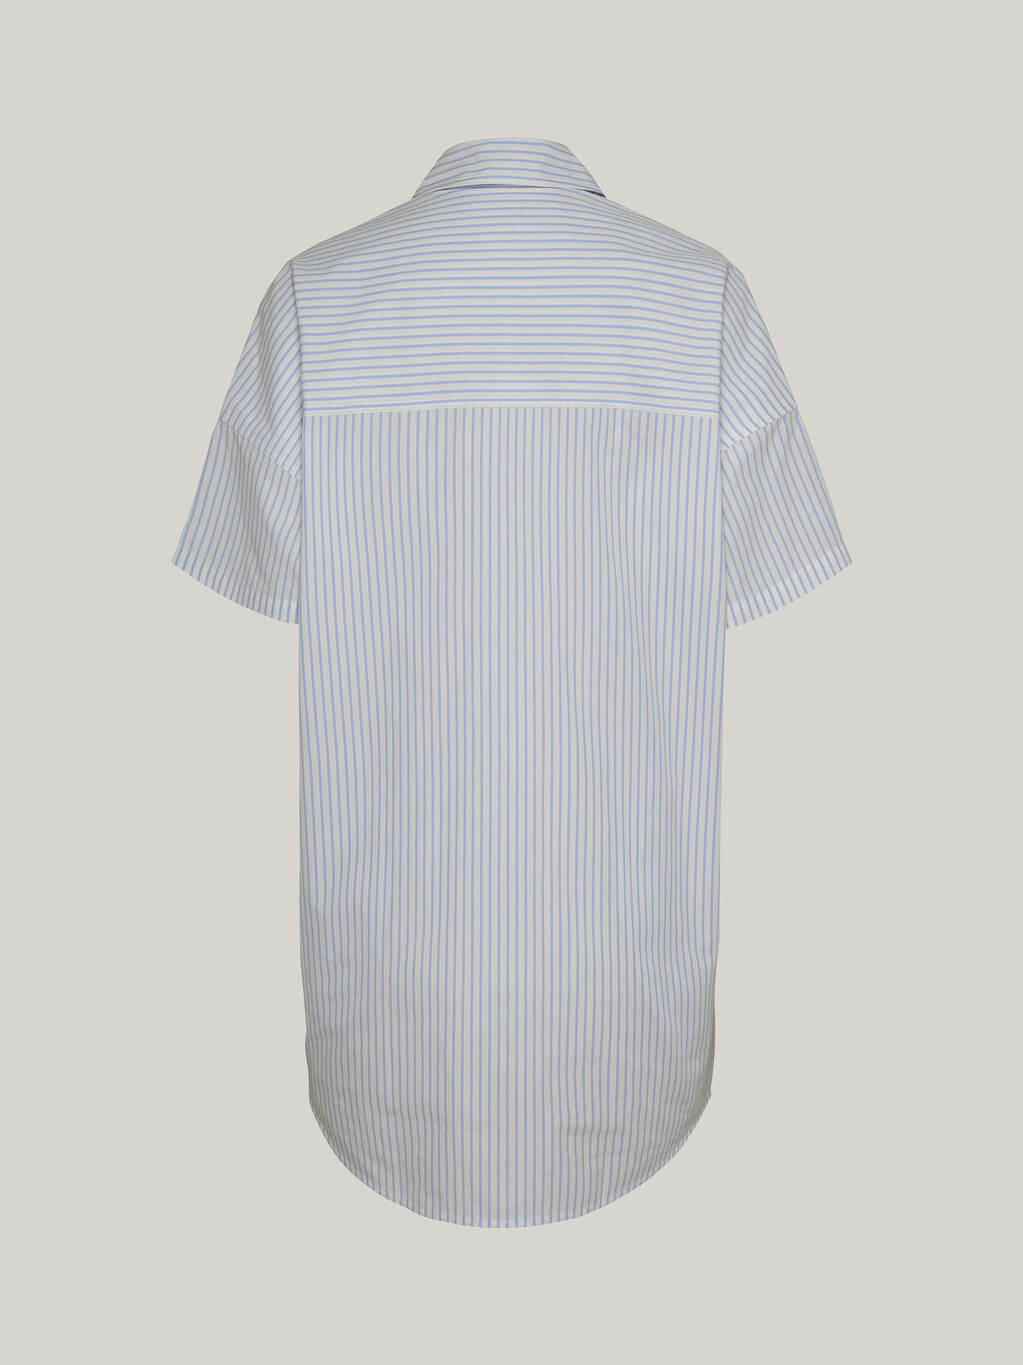 超寬鬆條紋襯衫洋裝, Moderate Blue / Stripe, hi-res